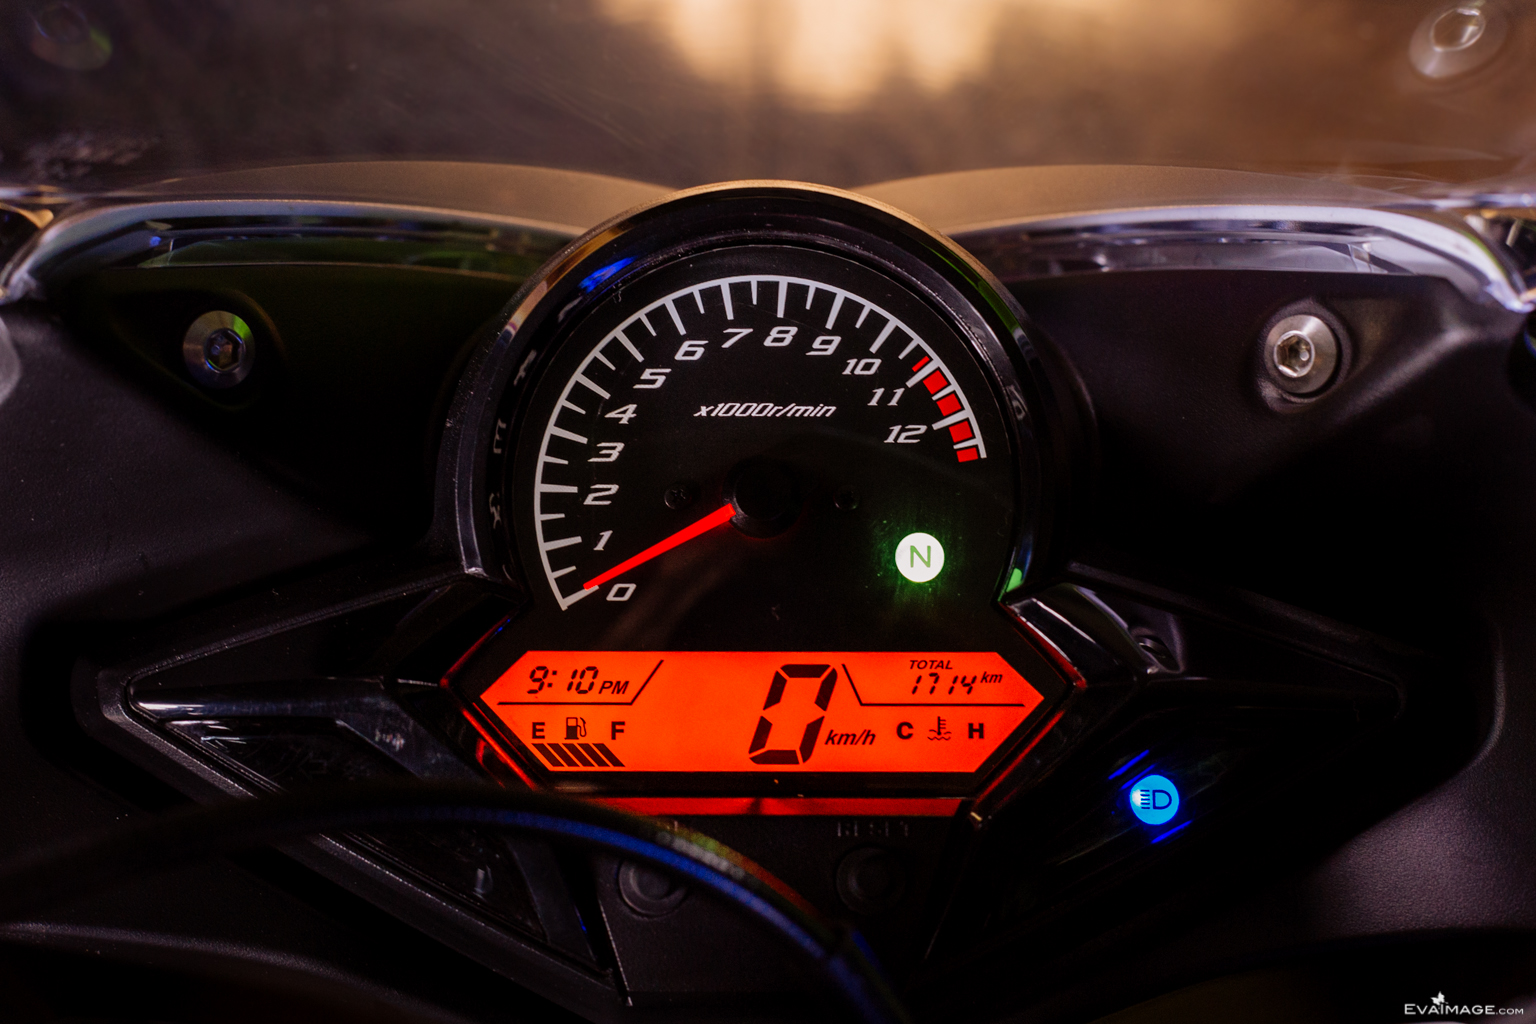  2014 Honda CBR 125R 